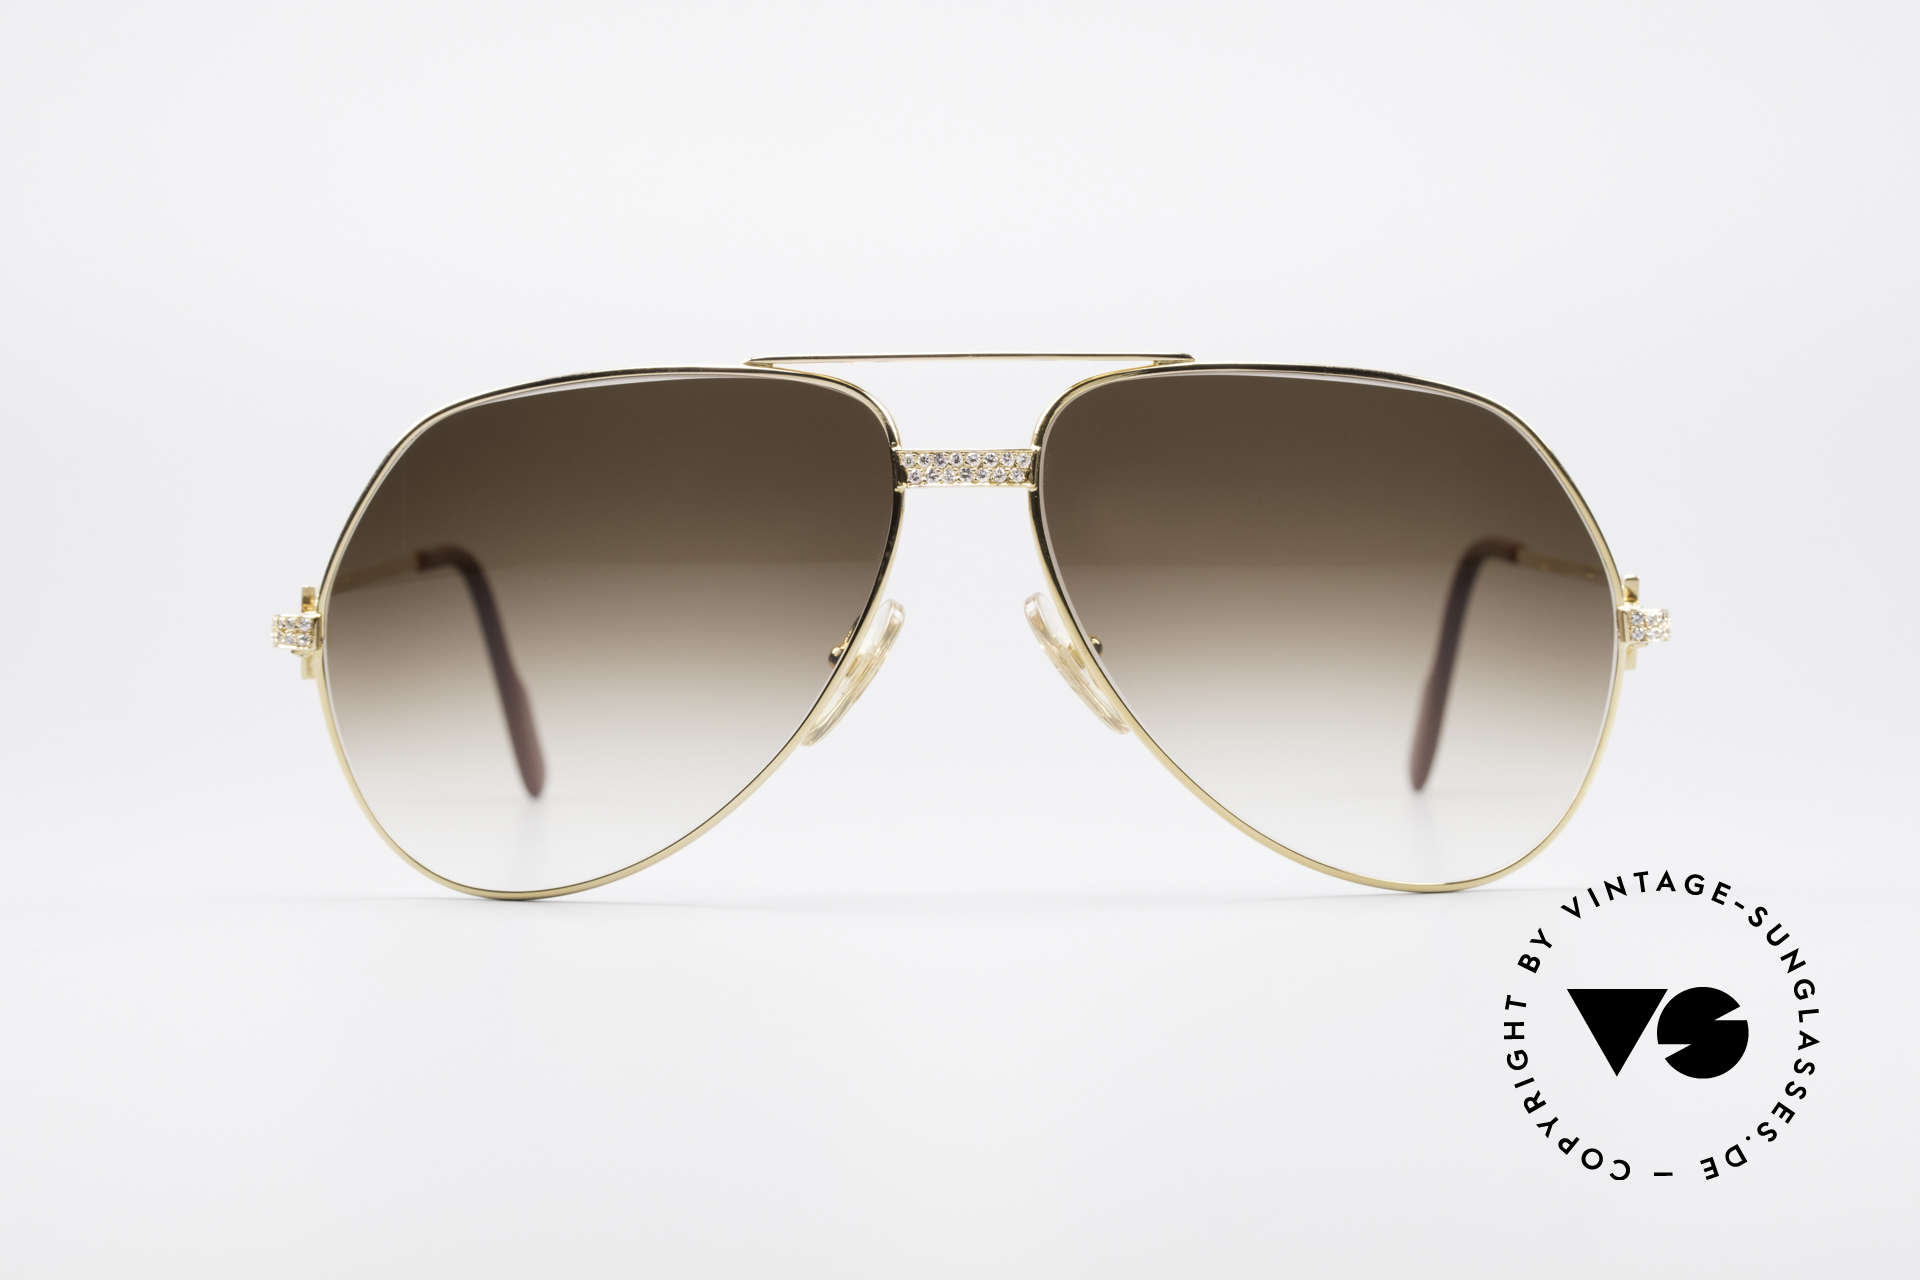 cartier 18k sunglasses